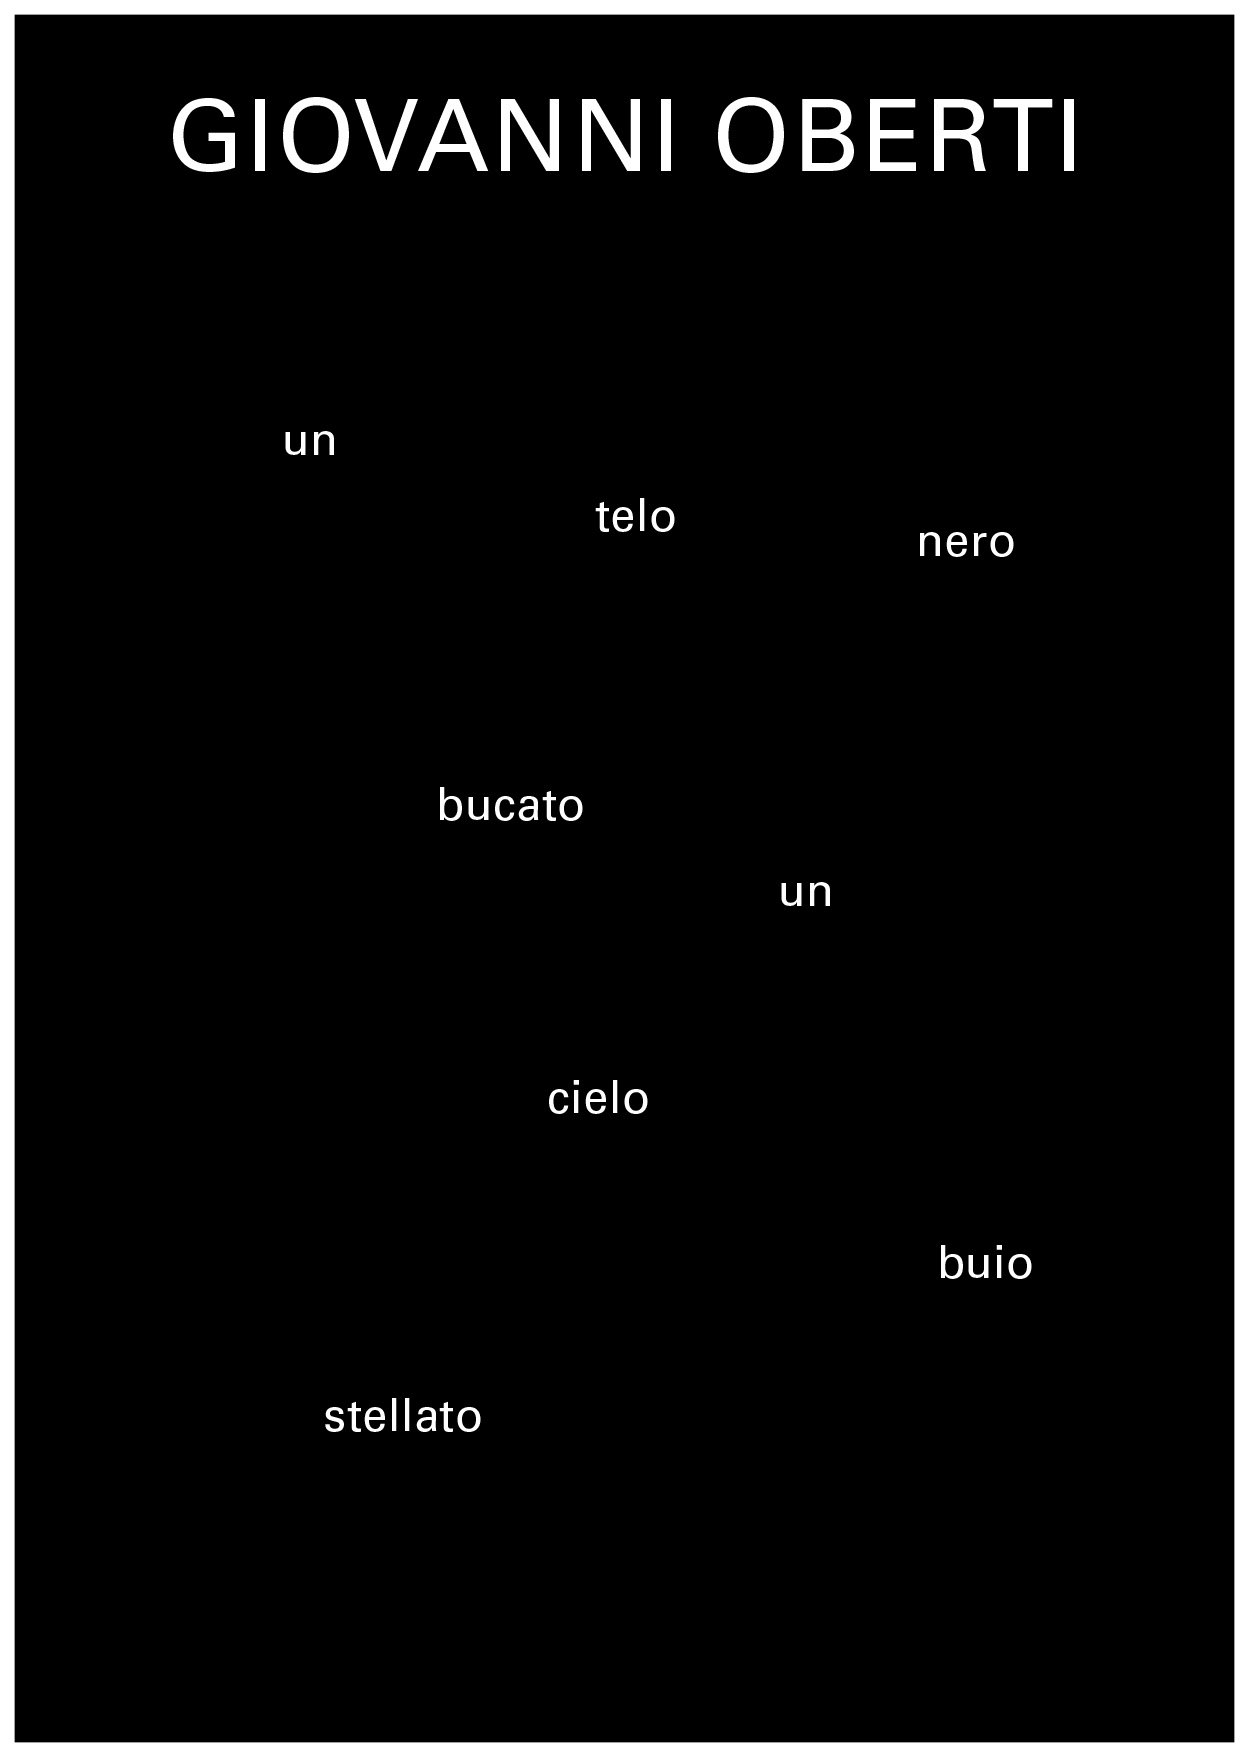 Giovanni Oberti - Un telo nero bucato un cielo buio stellato